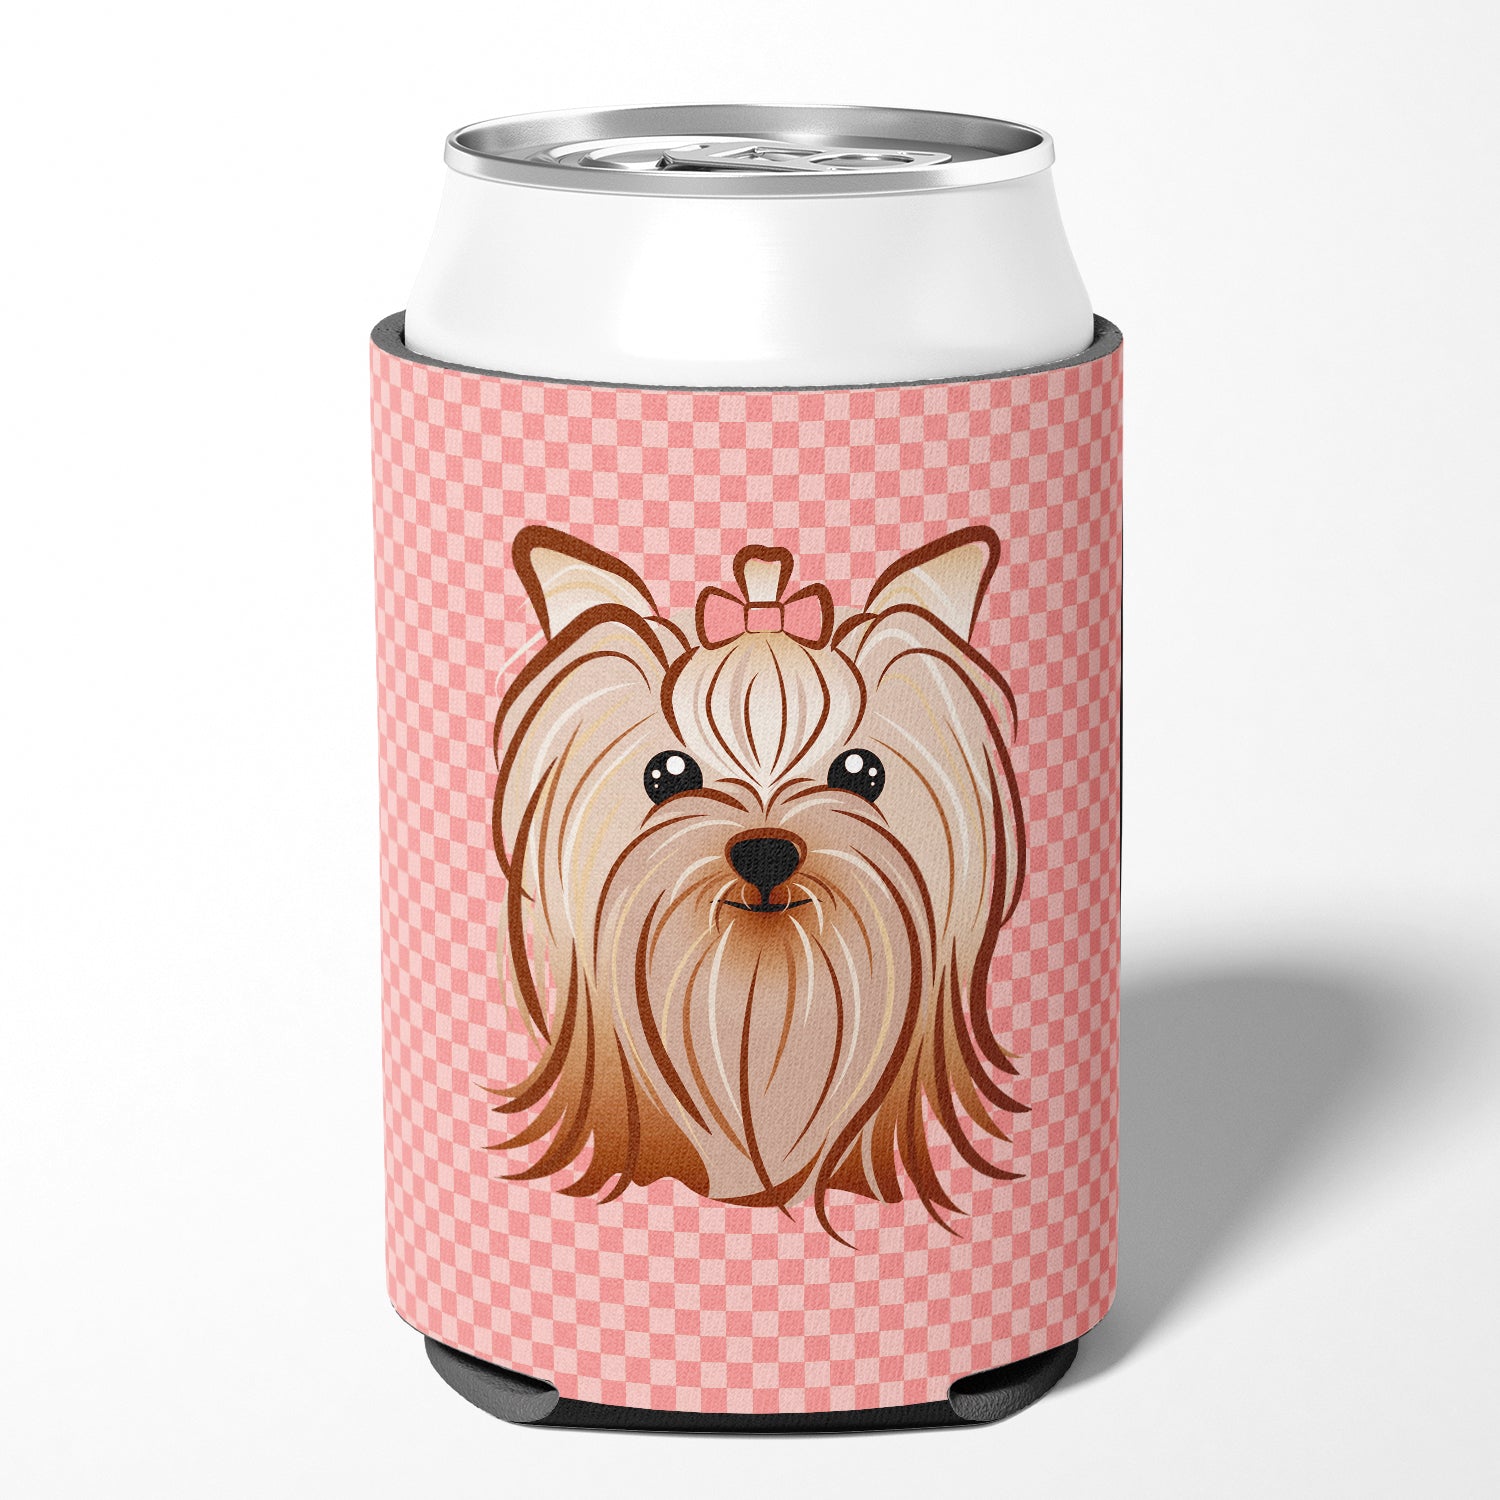 Canette ou Hugger de bouteille Yorkie / Yorkshire Terrier à carreaux roses BB1138CC